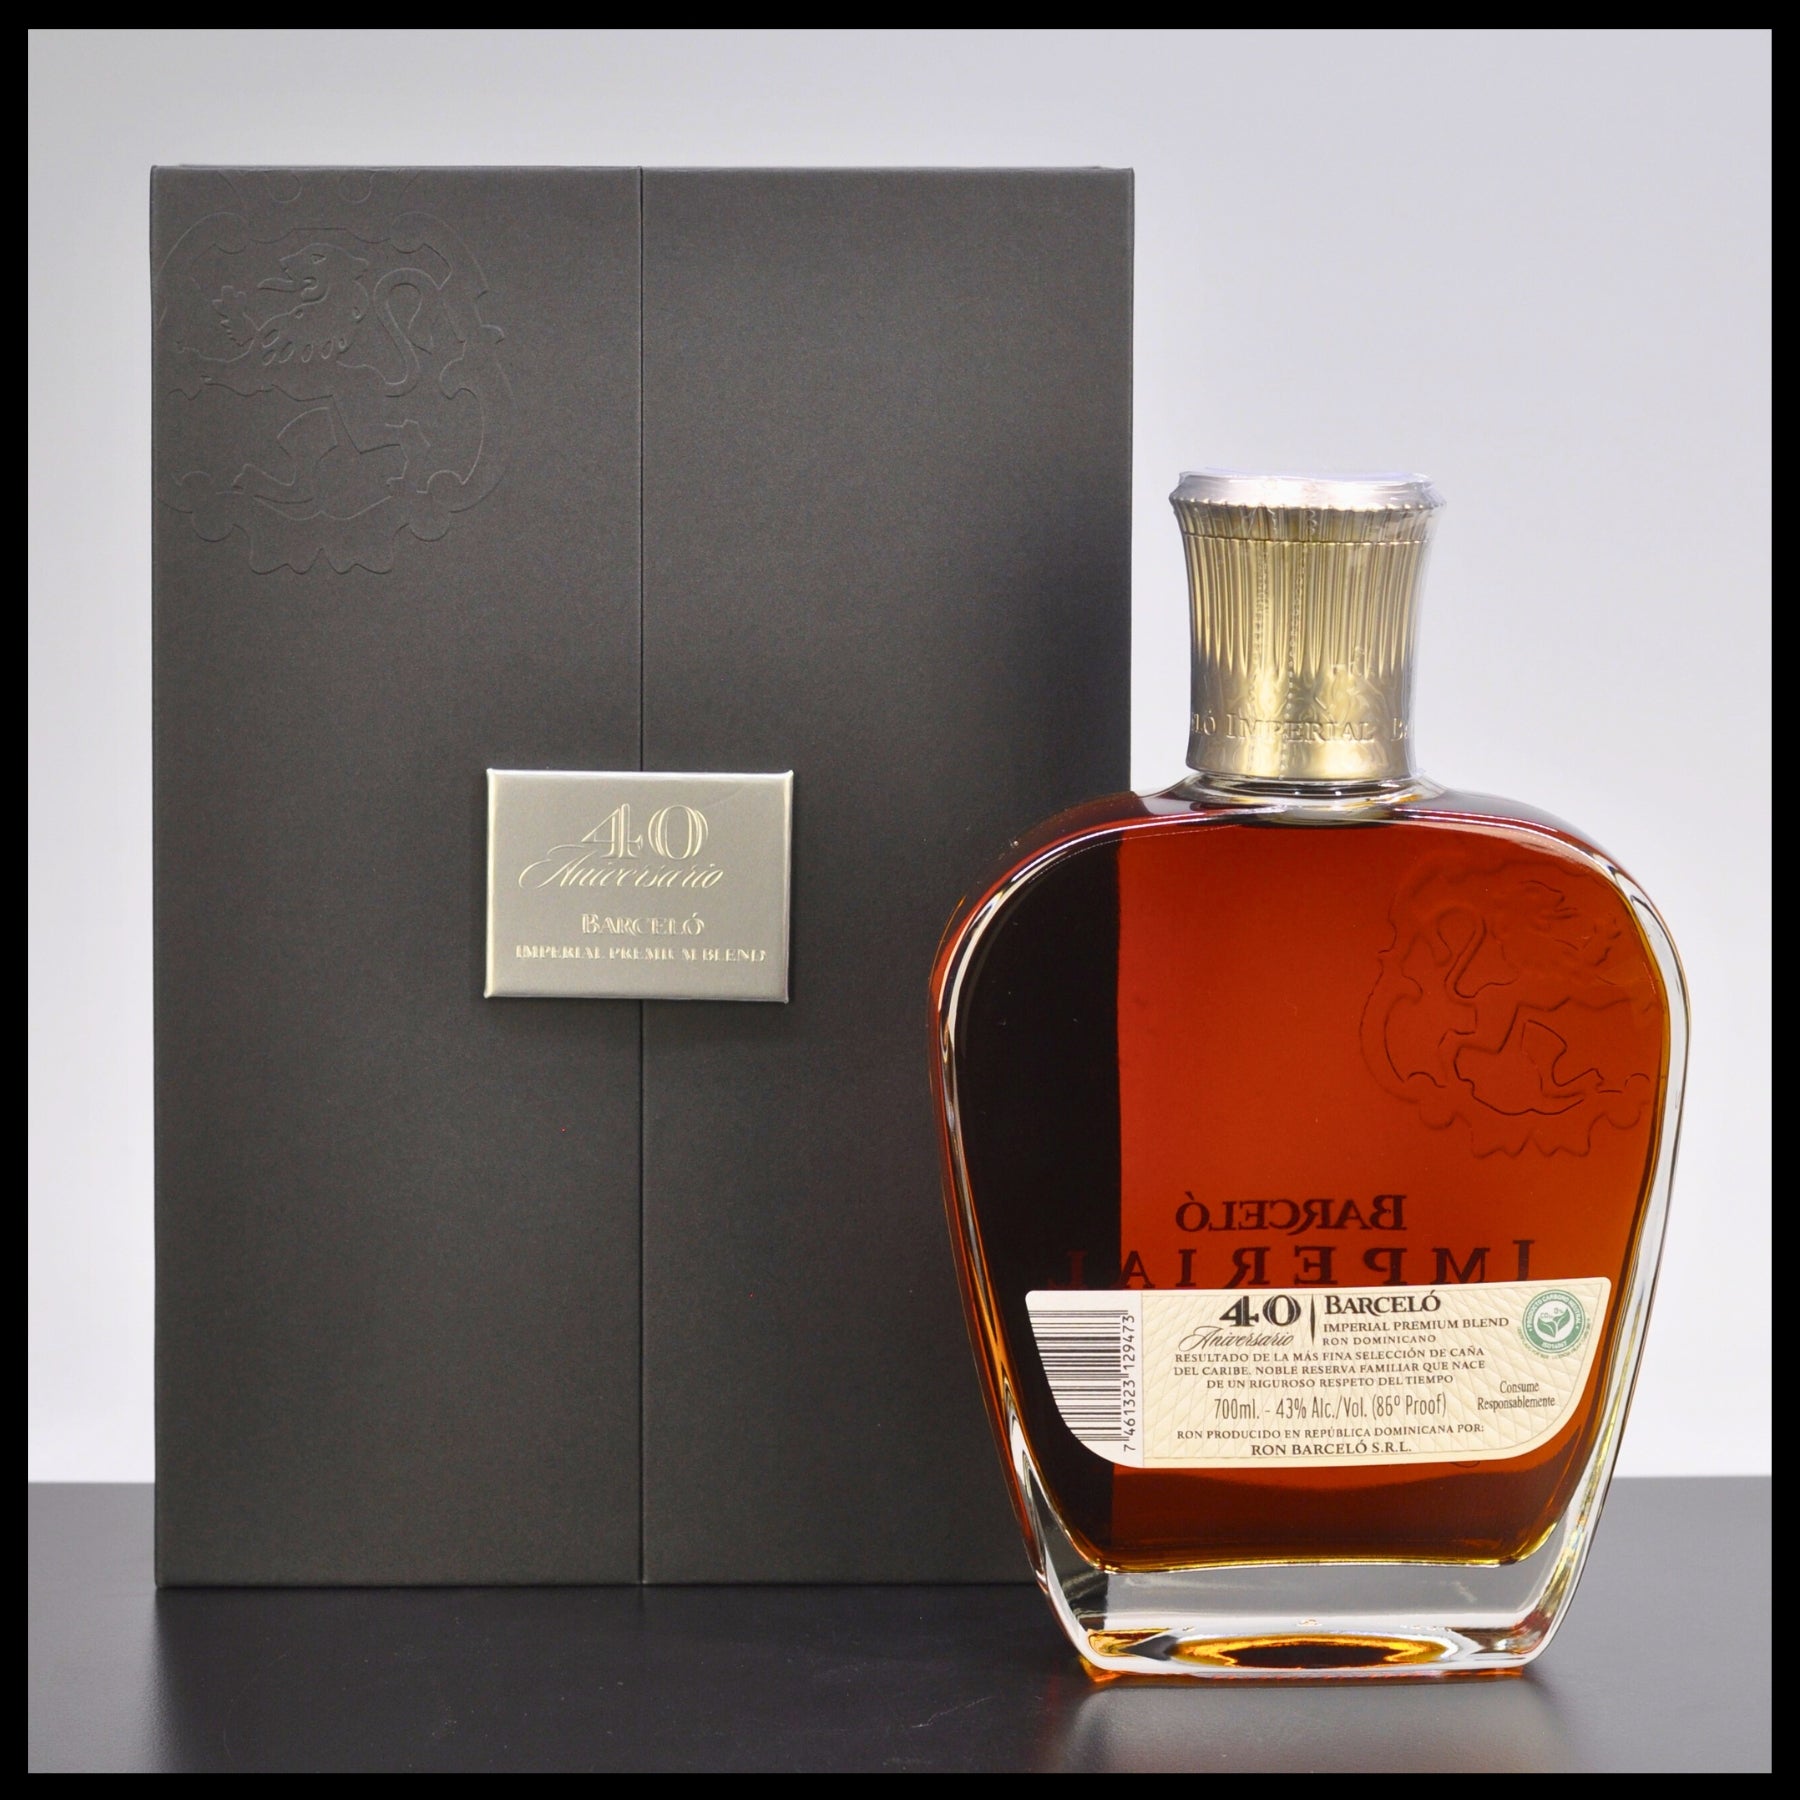 Ron Barcelo 40 Aniversario Imperial Premium Blended Rum 0,7L - 43% Vol.